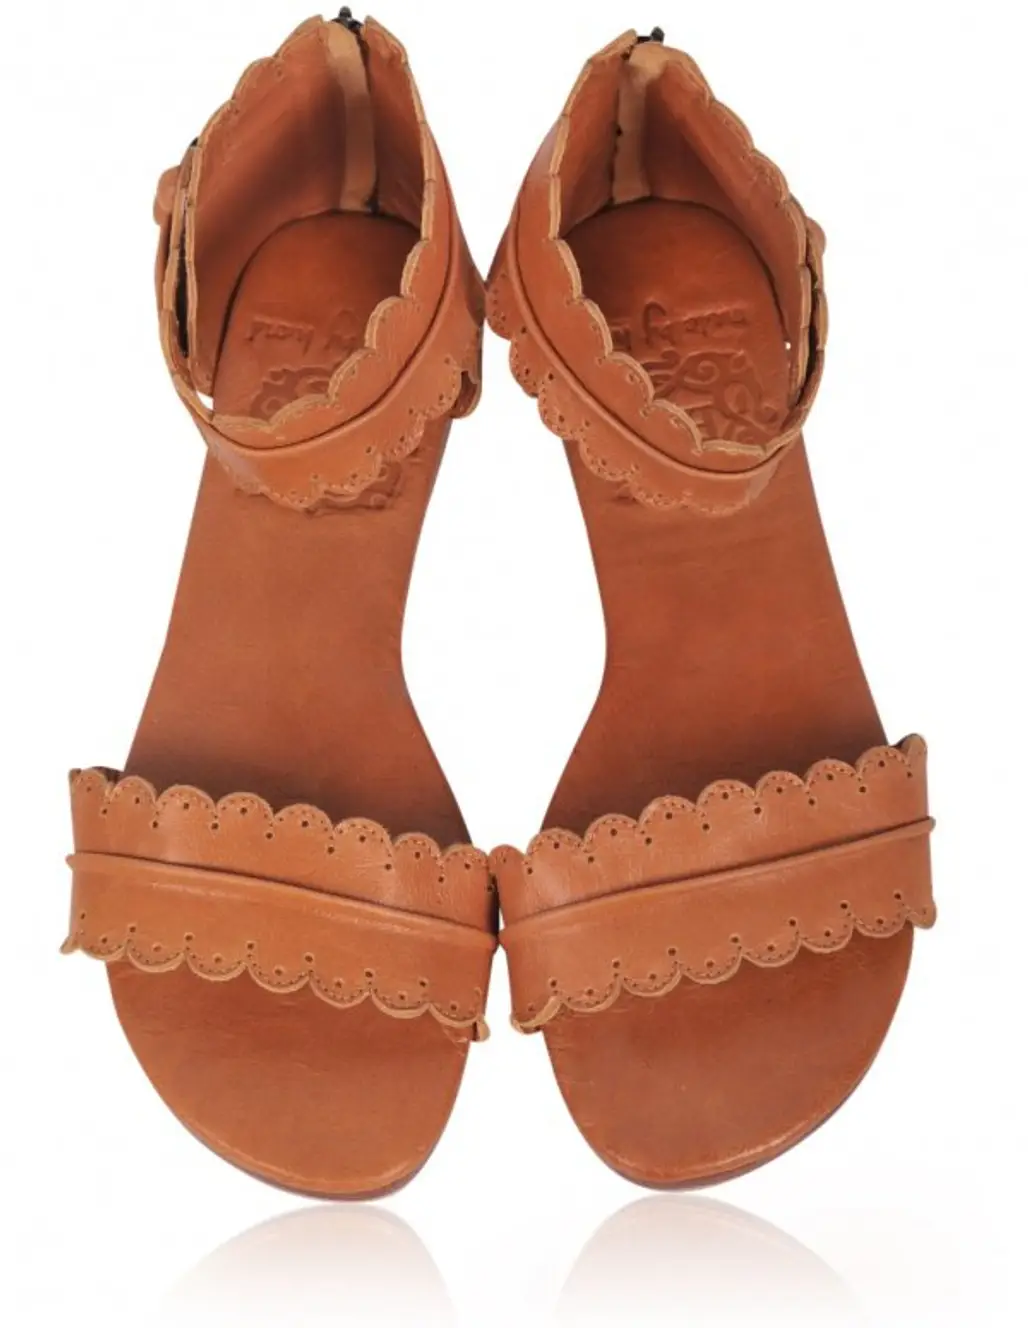 footwear,brown,shoe,tan,orange,